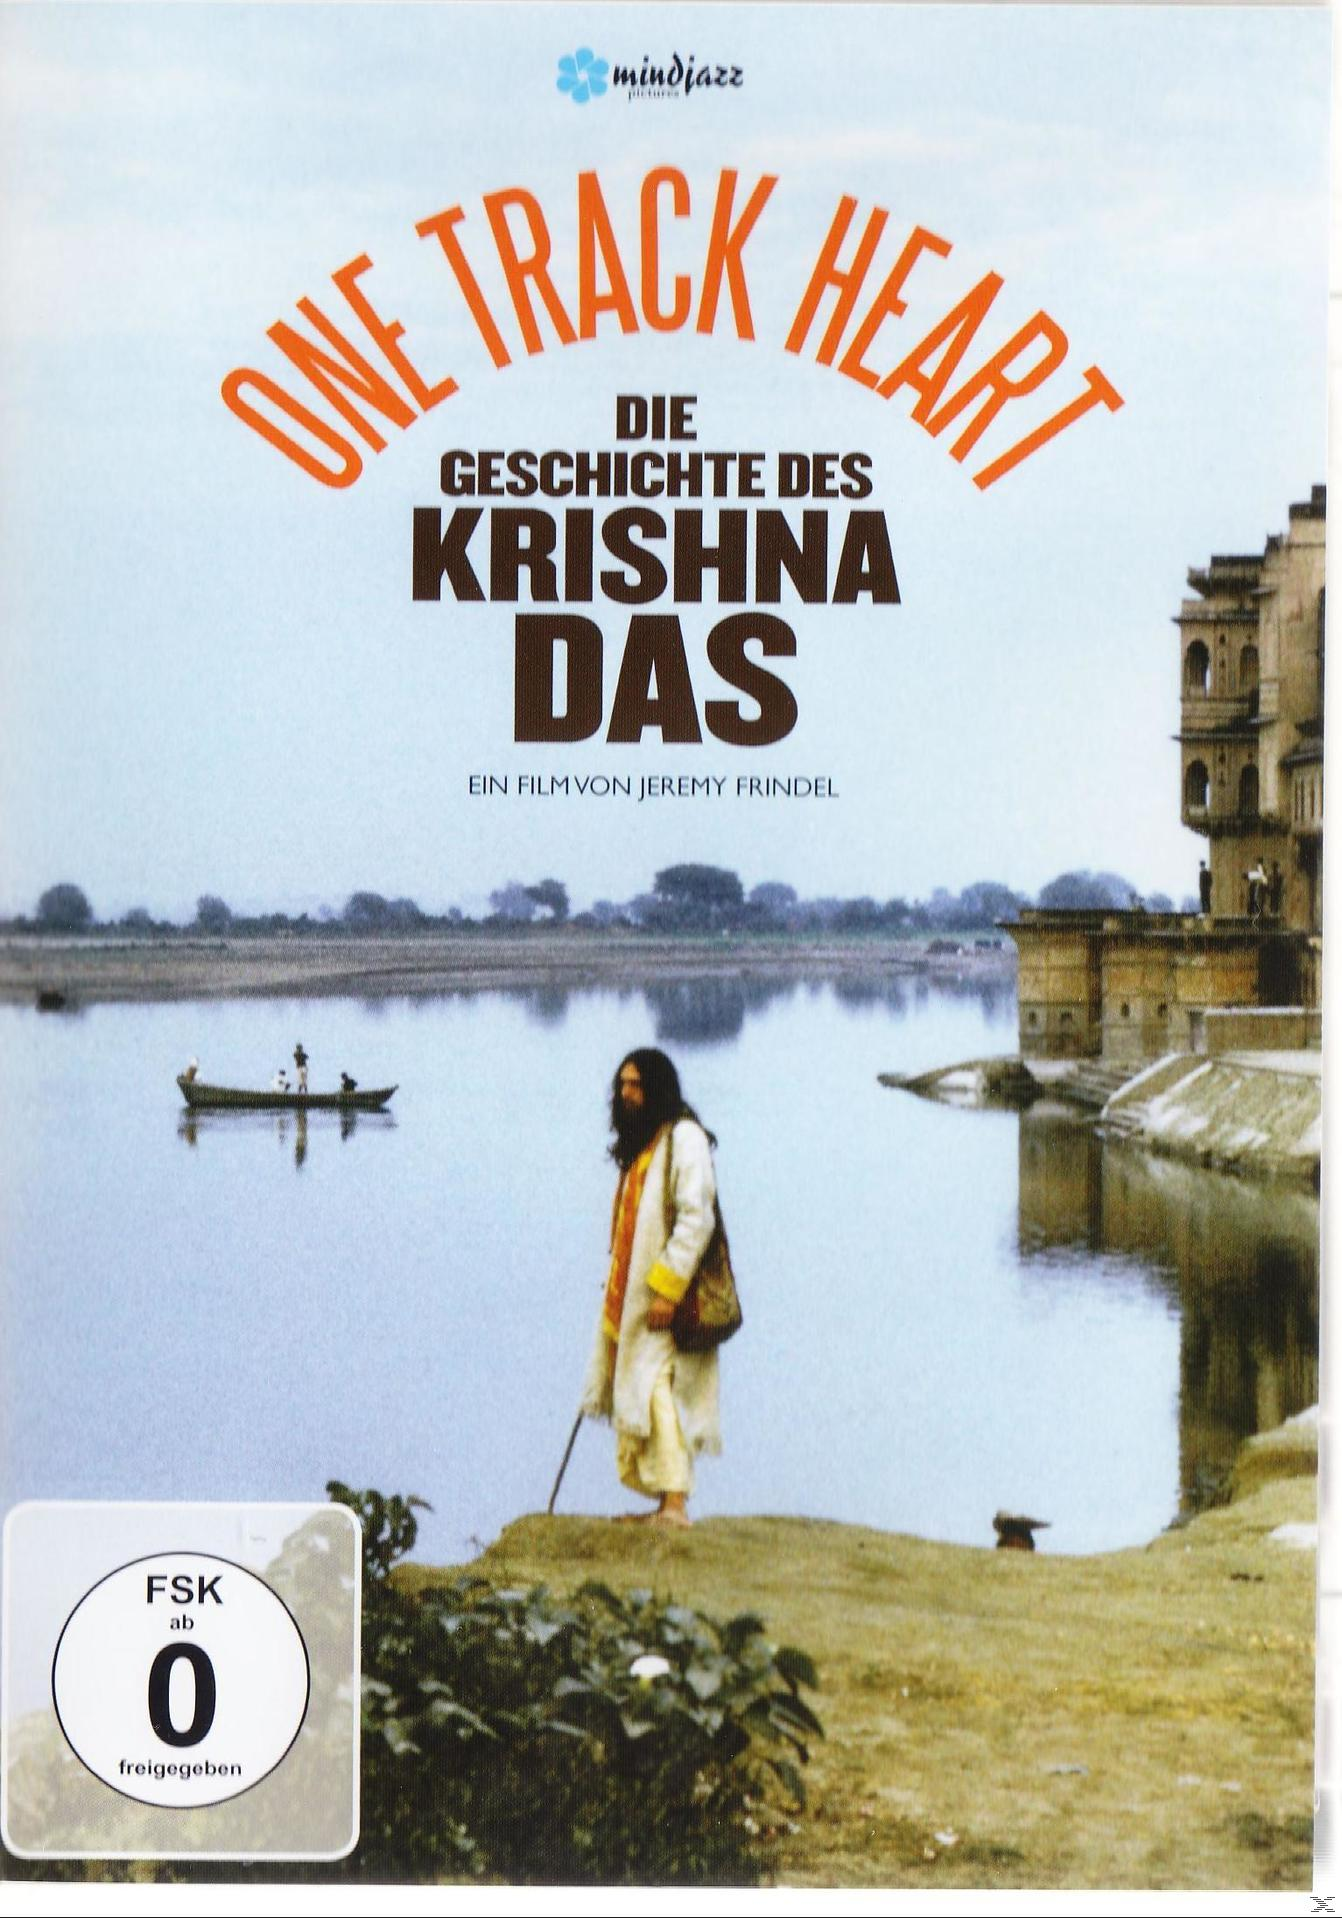 ONE TRACK HEART - DAS DIE DES KRISHNA GESCHICHTE DVD